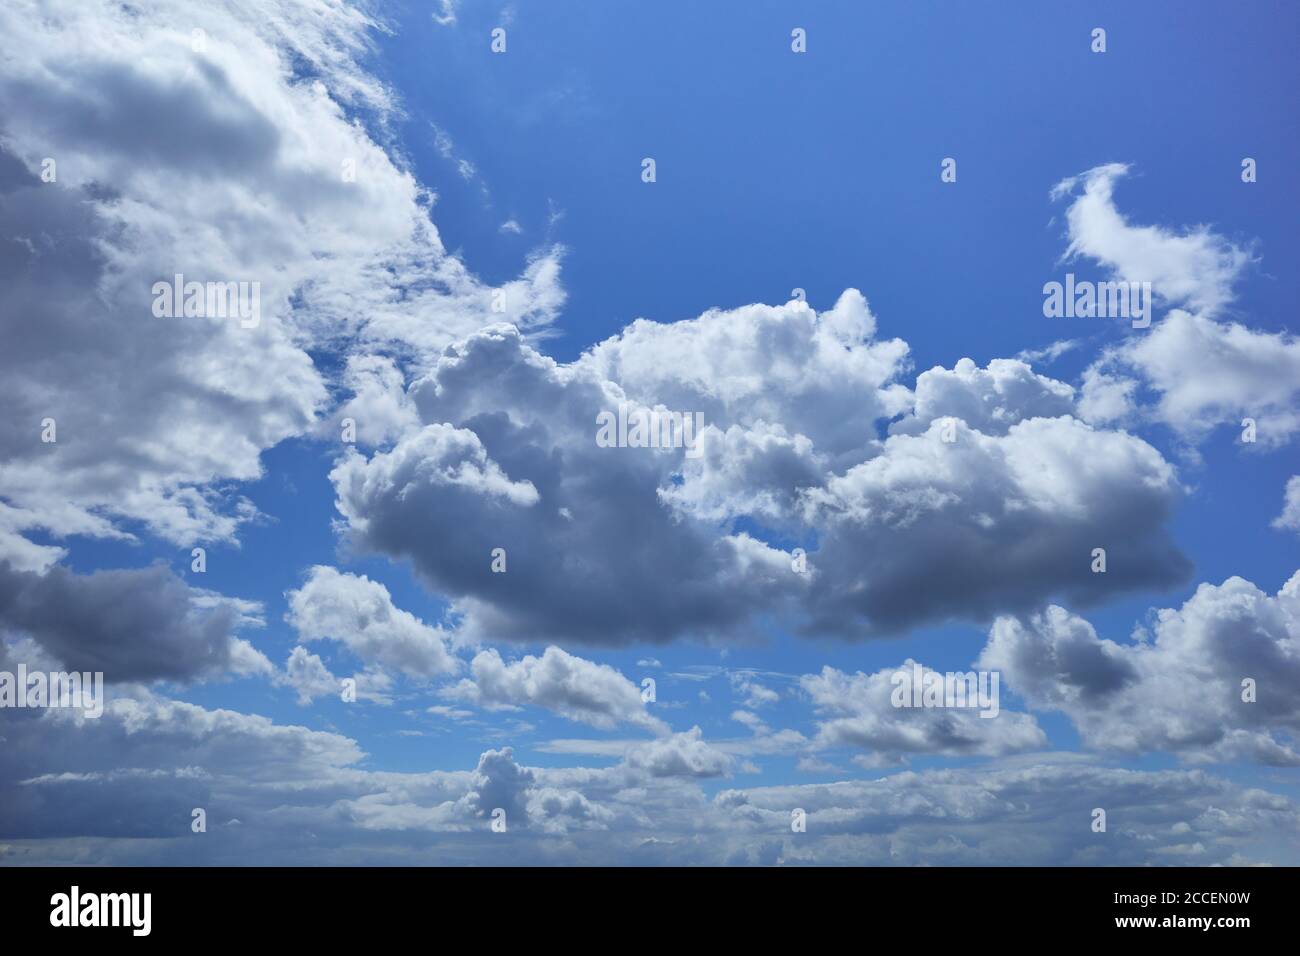 Blauer Himmel mit flauschigen Cumuluswolken, die wie Stücke von schwebender Baumwolle aussehen. Hintergrund für Vorhersage und Meteorologie Illustration Stockfoto